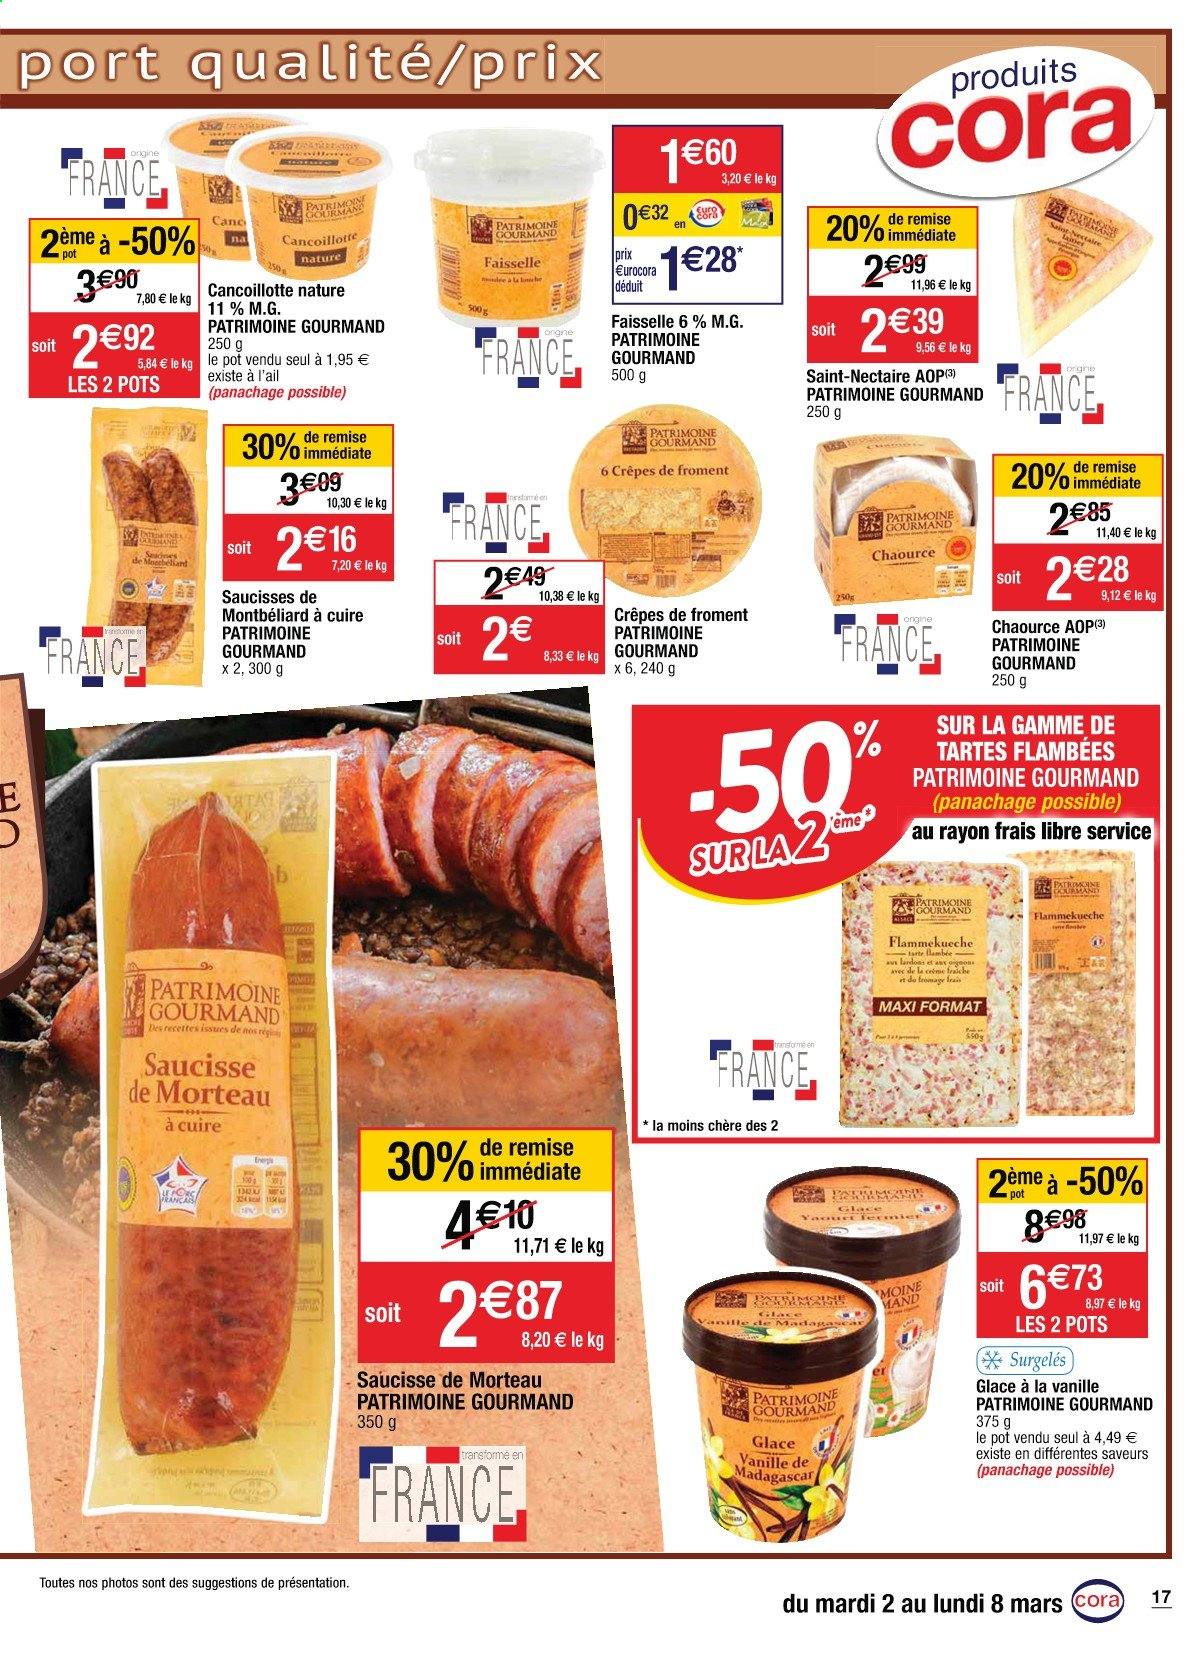 thumbnail - Catalogue Cora - 02/03/2021 - 08/03/2021 - Produits soldés - crêpes, lardons, saucisse, fromage frais, Chaource, faisselle, glace, Flammekueche. Page 17.